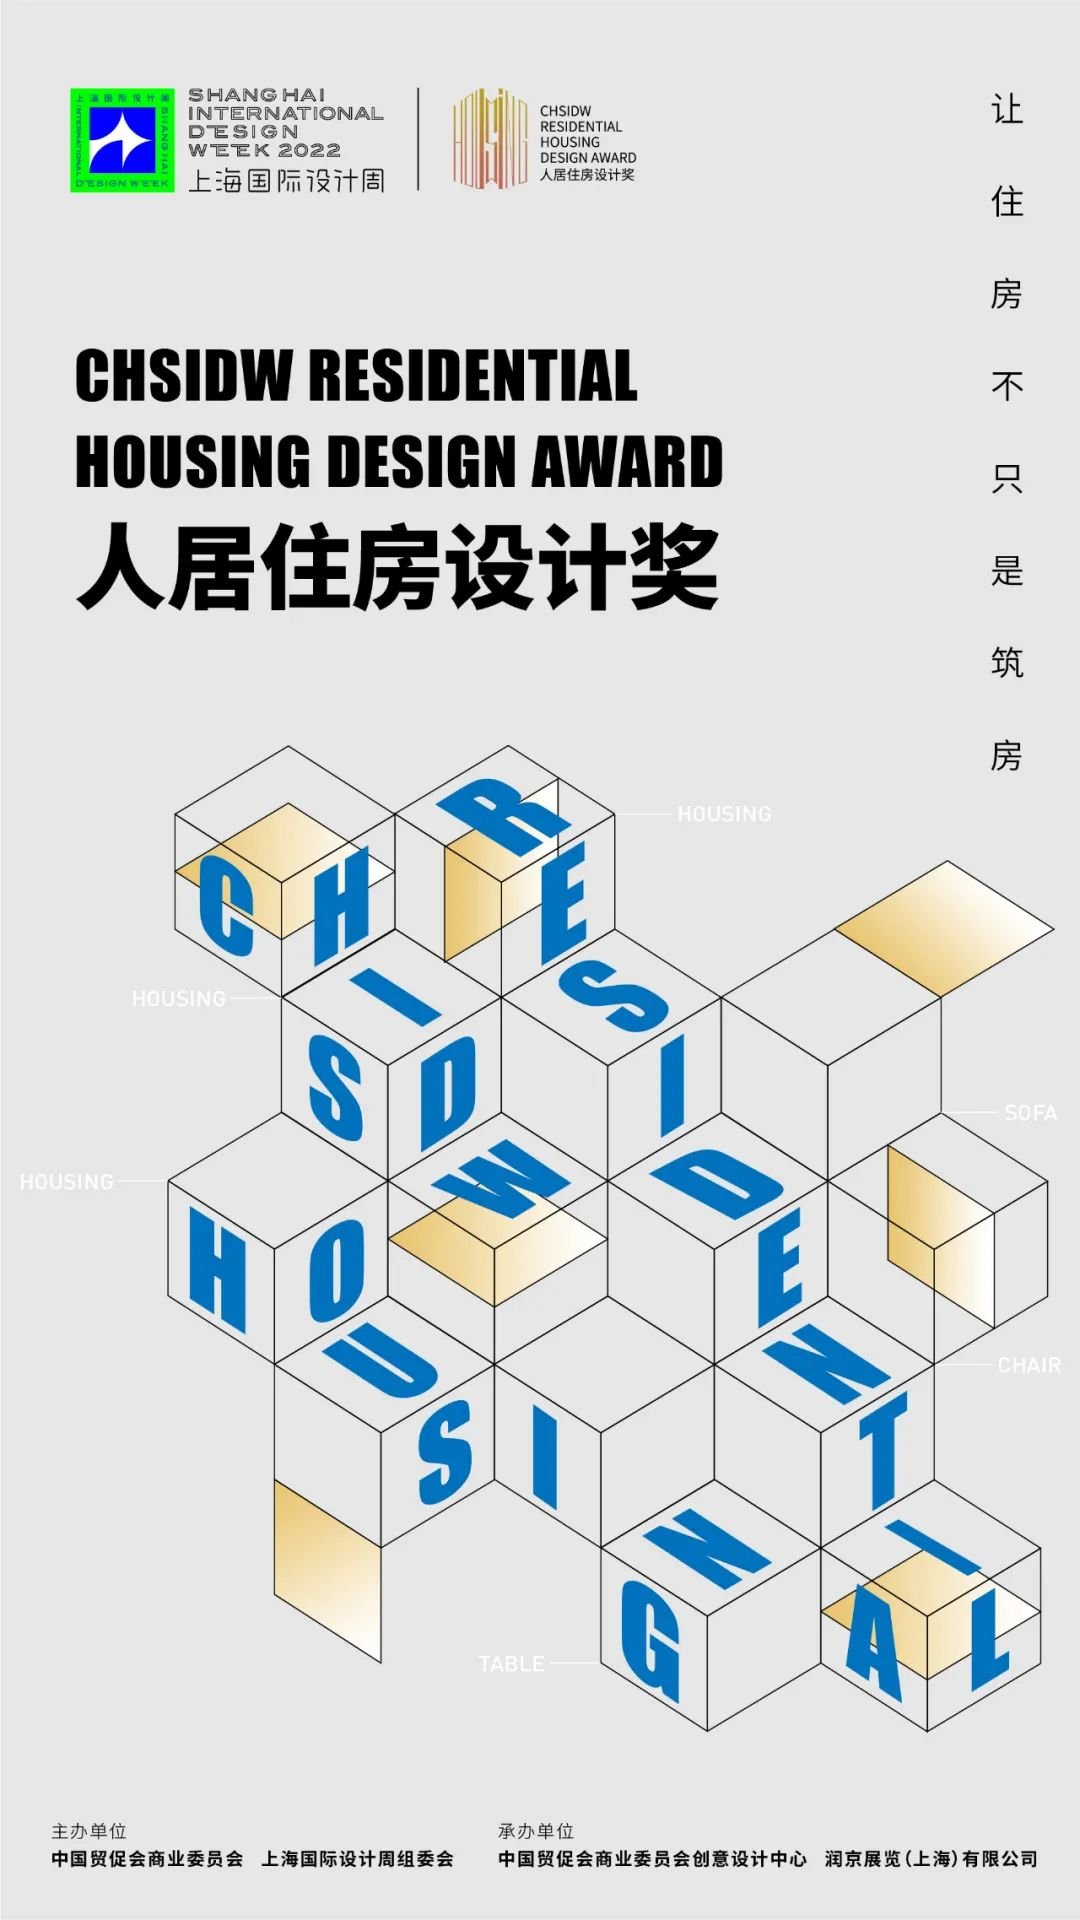 上海国际设计周 | 2022CHSIDW人居住房设计奖诚邀您参评！